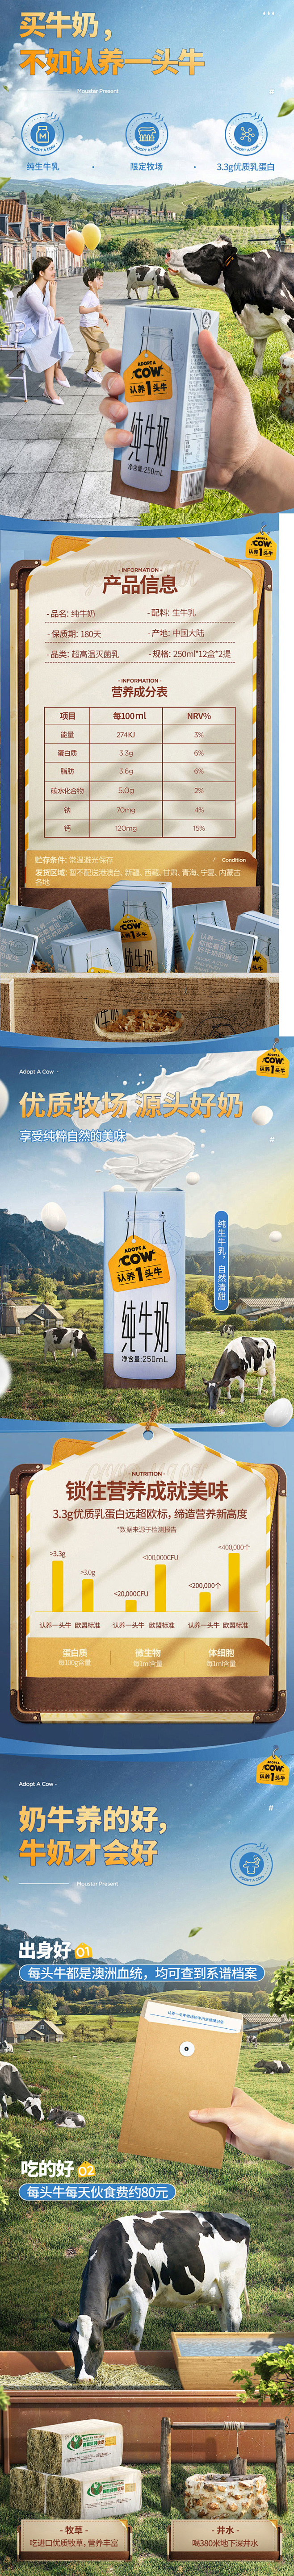 牛奶 营养 认养一头牛全脂纯牛奶 产品详...